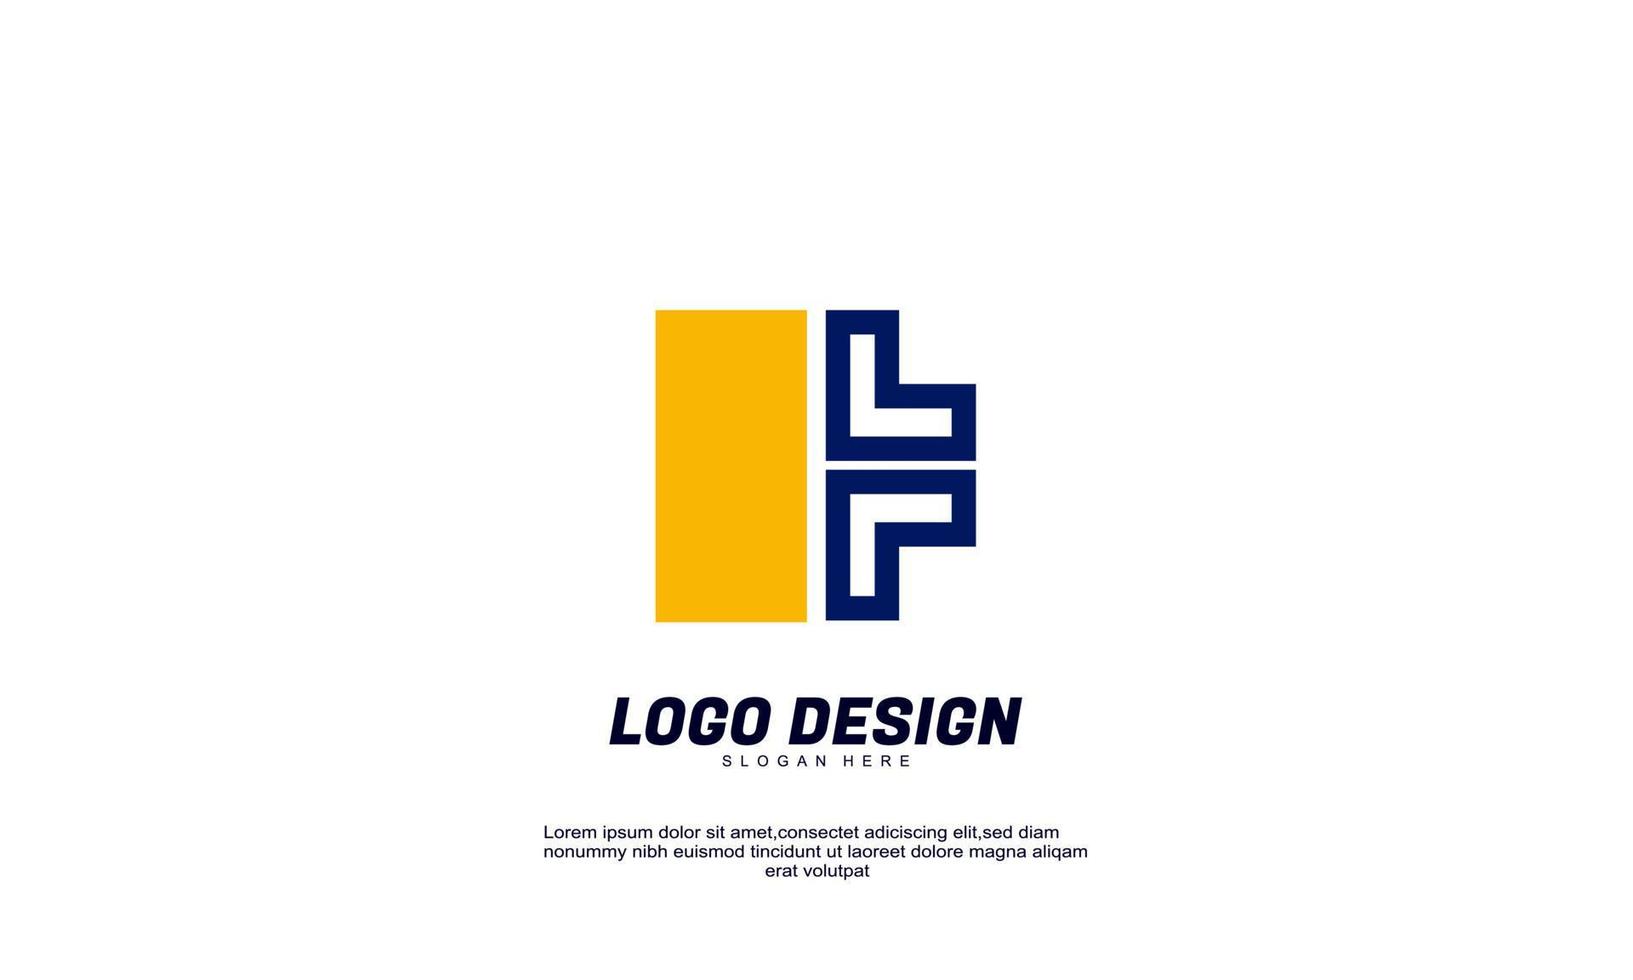 génial stock vector idée créative identité de marque pour le modèle de conceptions de logo d'entreprise isolé